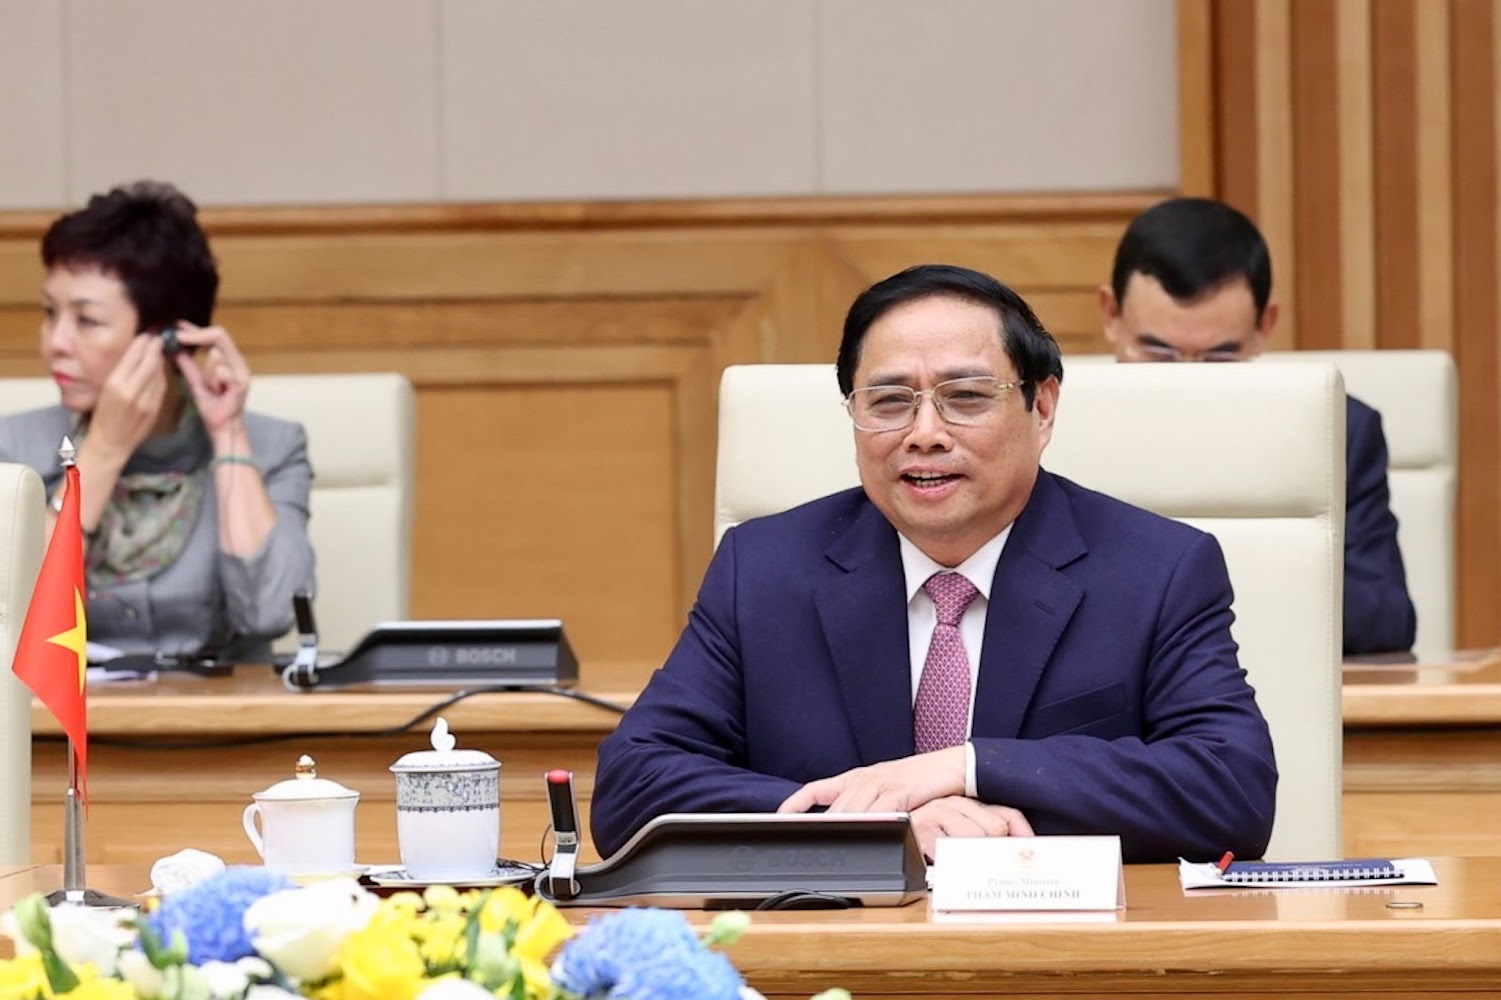 Chùm ảnh: Thủ tướng Phạm Minh Chính tiếp Tổng Thư ký LHQ  - Ảnh 5.